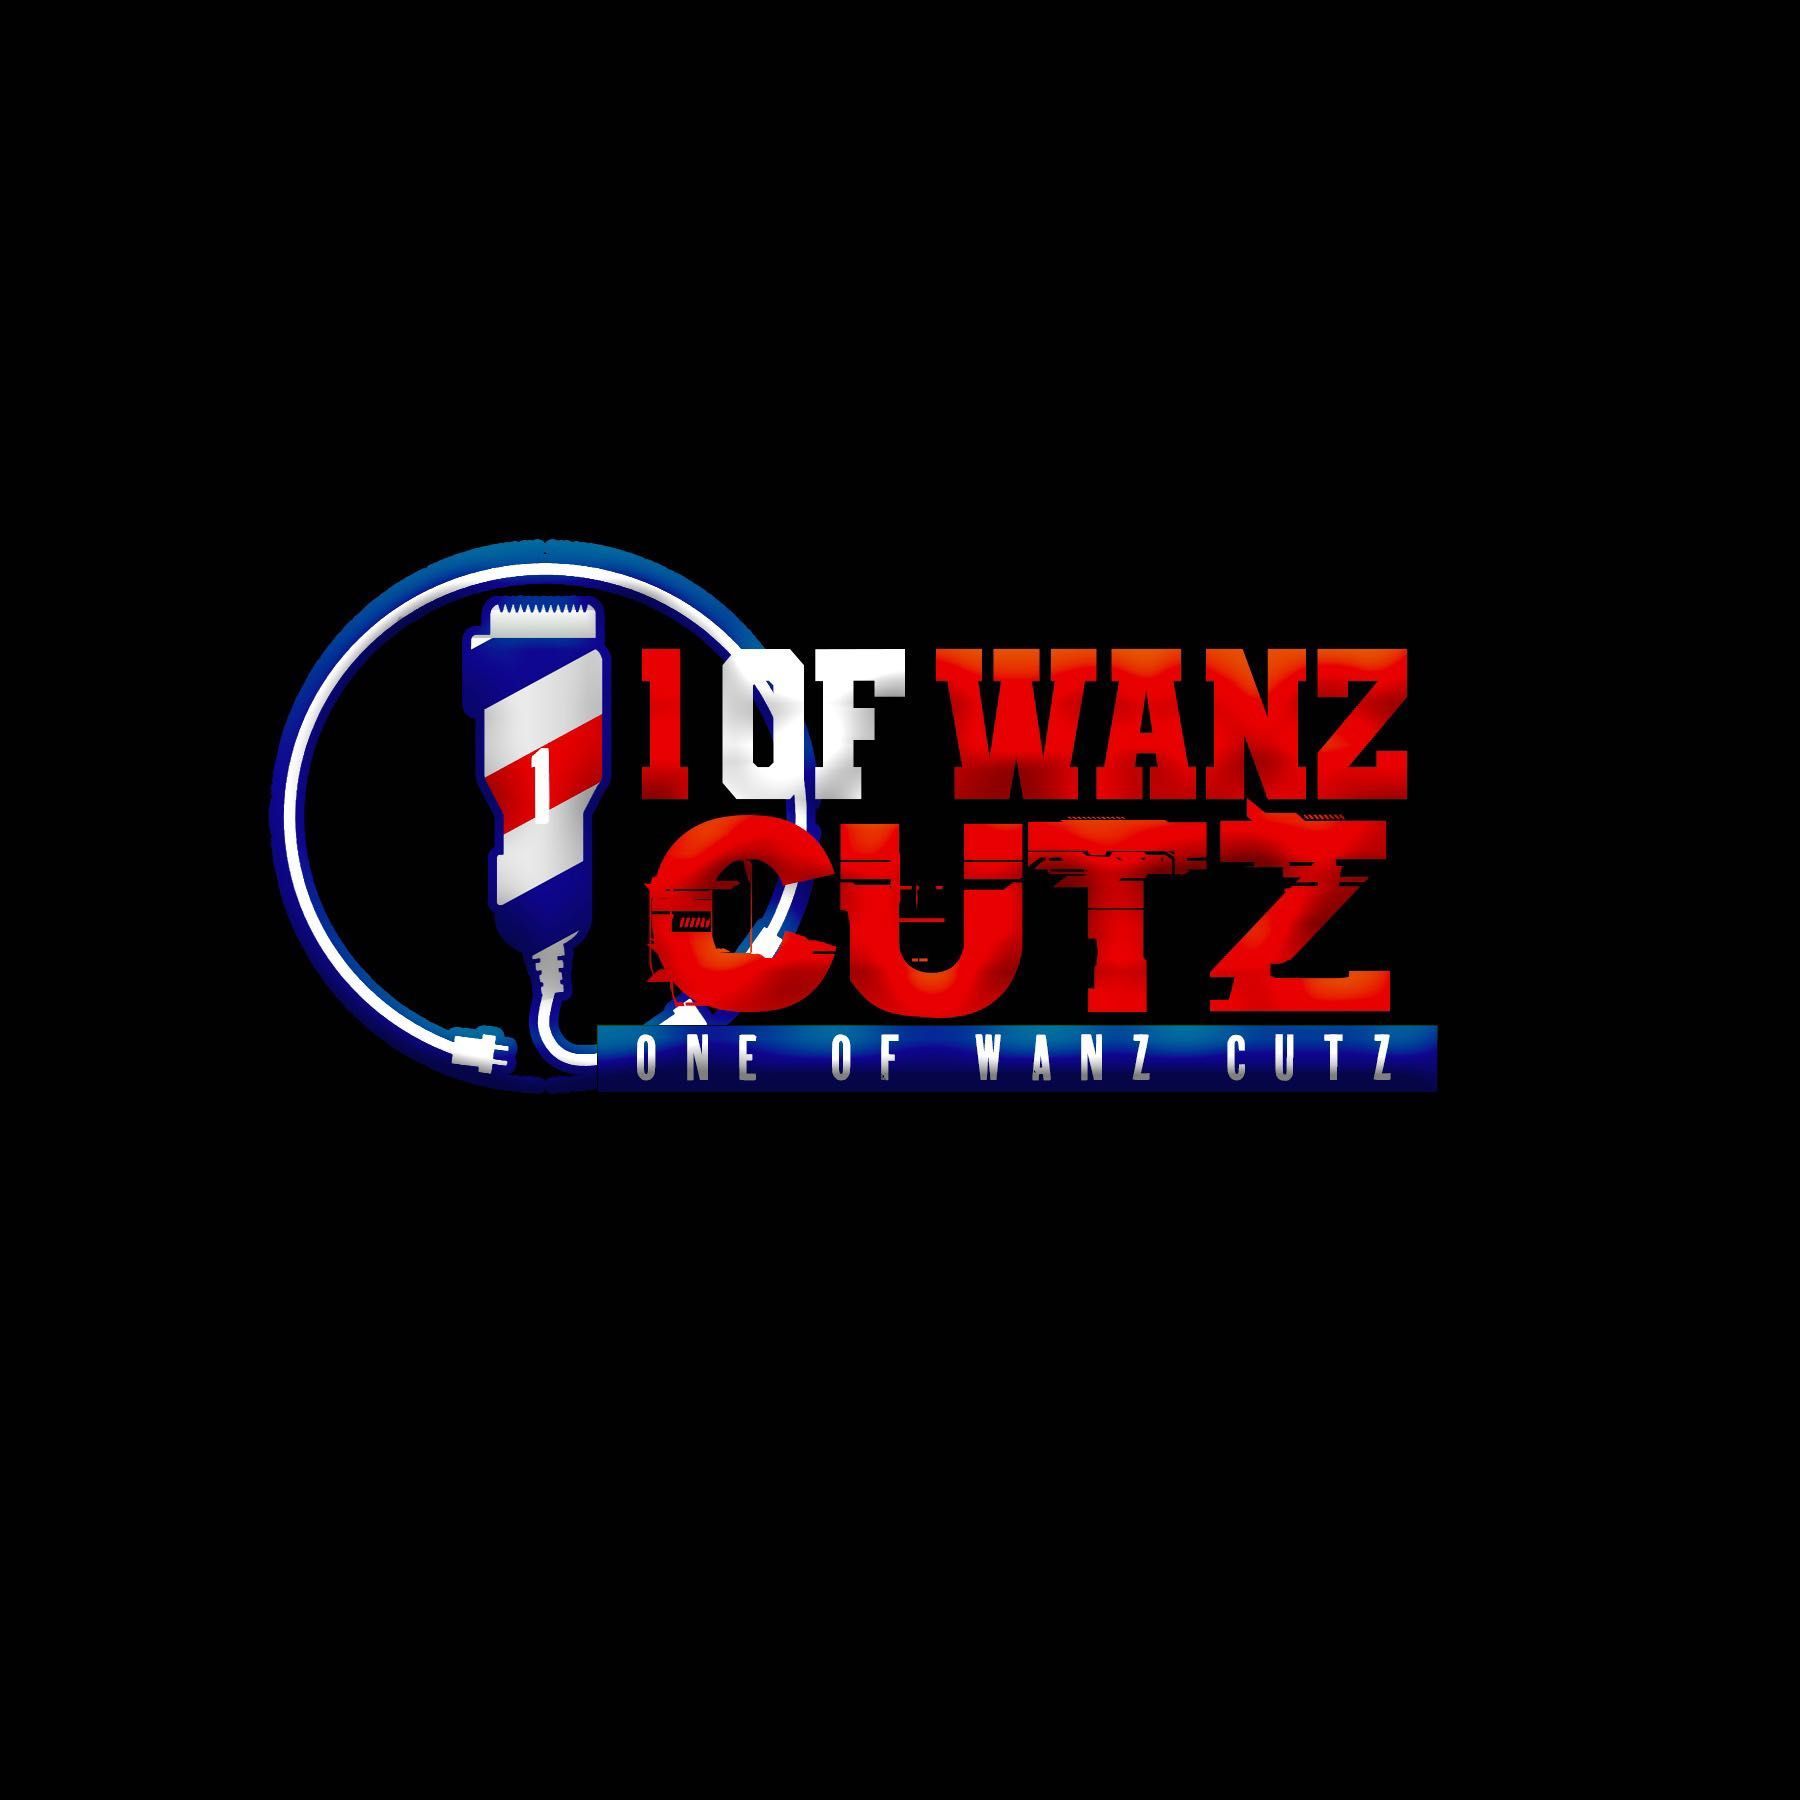 1OfWanz Cutz, 361 Towne Center Blvd, Unit 140, Ridgeland, 39157